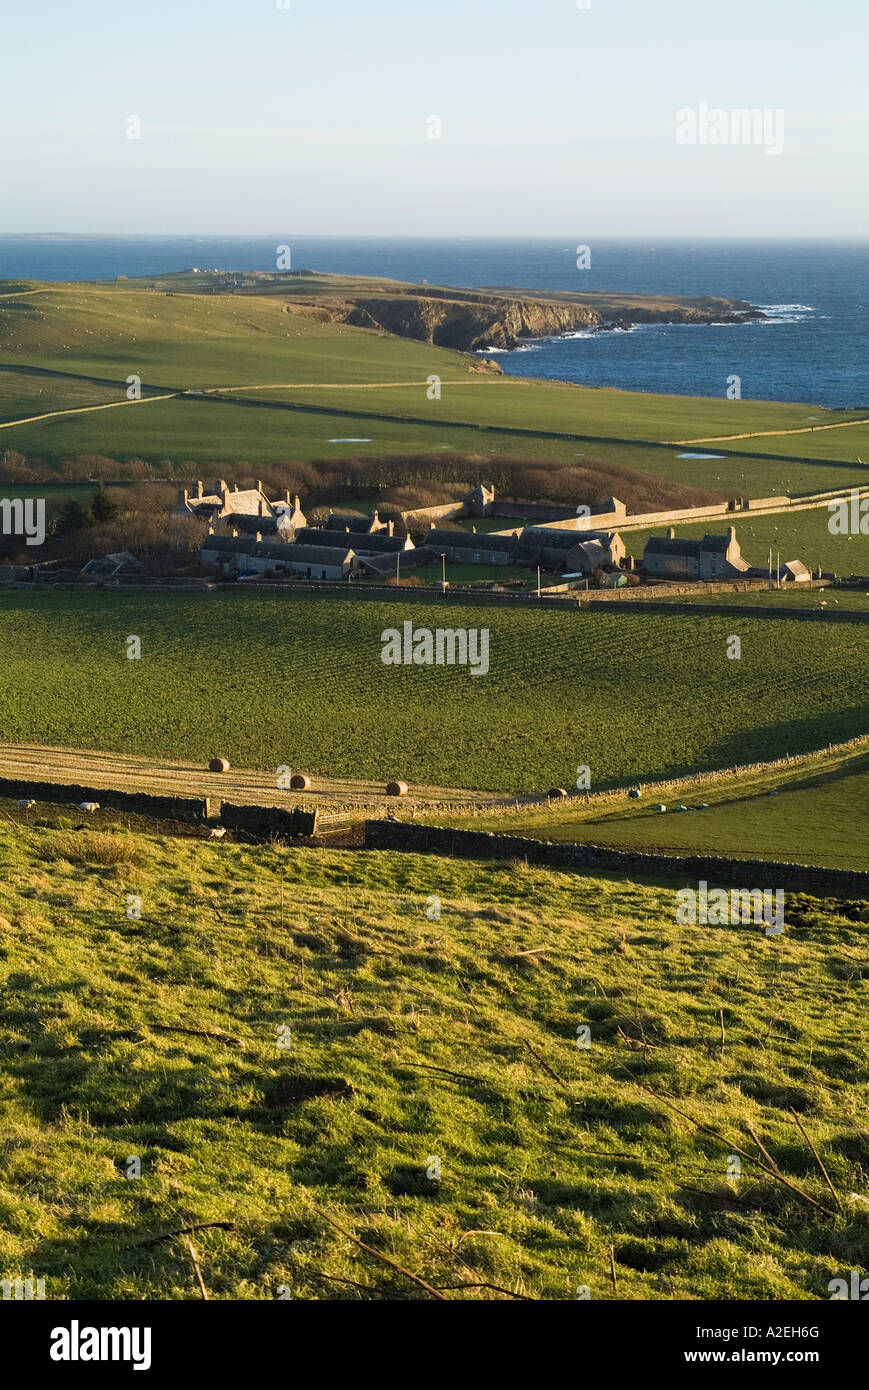 Dh Melsetter hoy las islas Orcadas y las tierras de cultivo de la granja Melsetter Pentland Firth acantilados Foto de stock